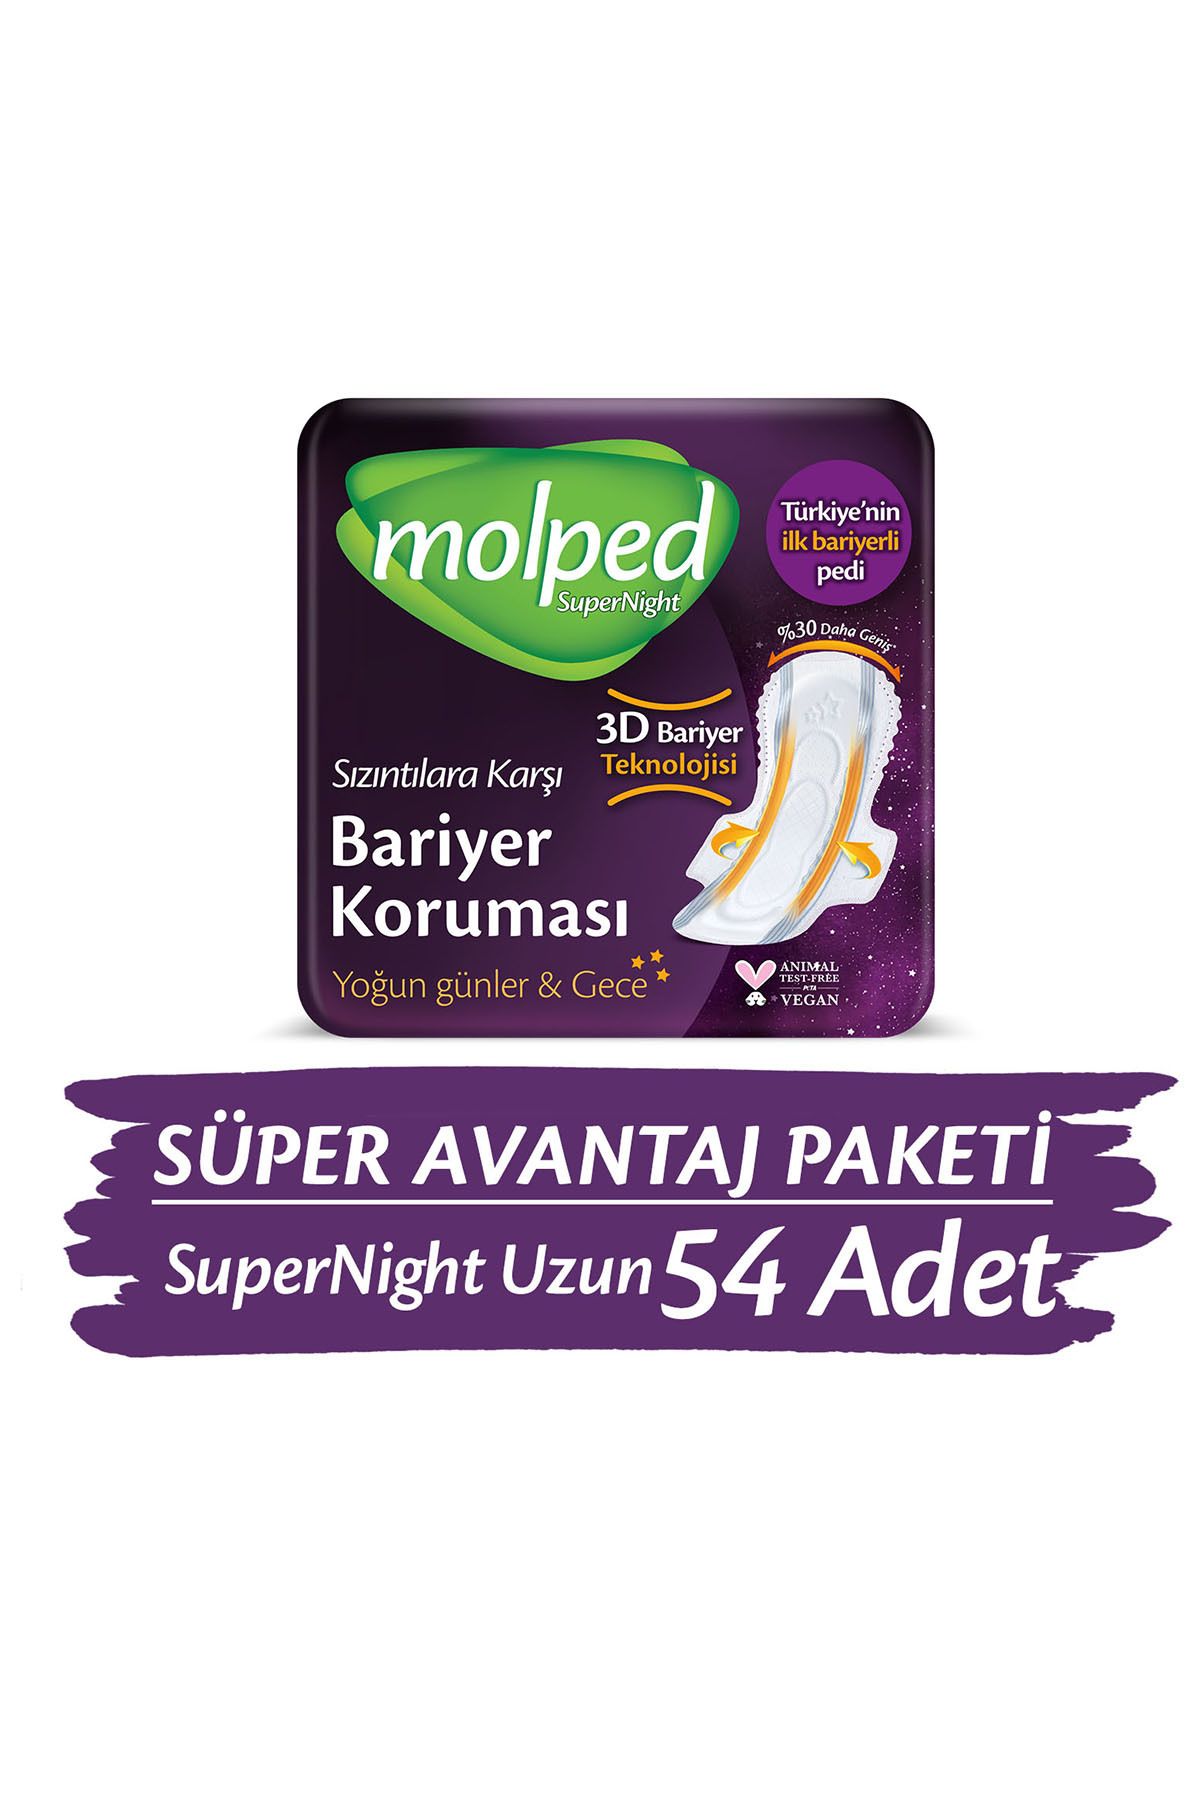 Molped Supernight Uzun Süper Avantaj Paketi 54 Adet